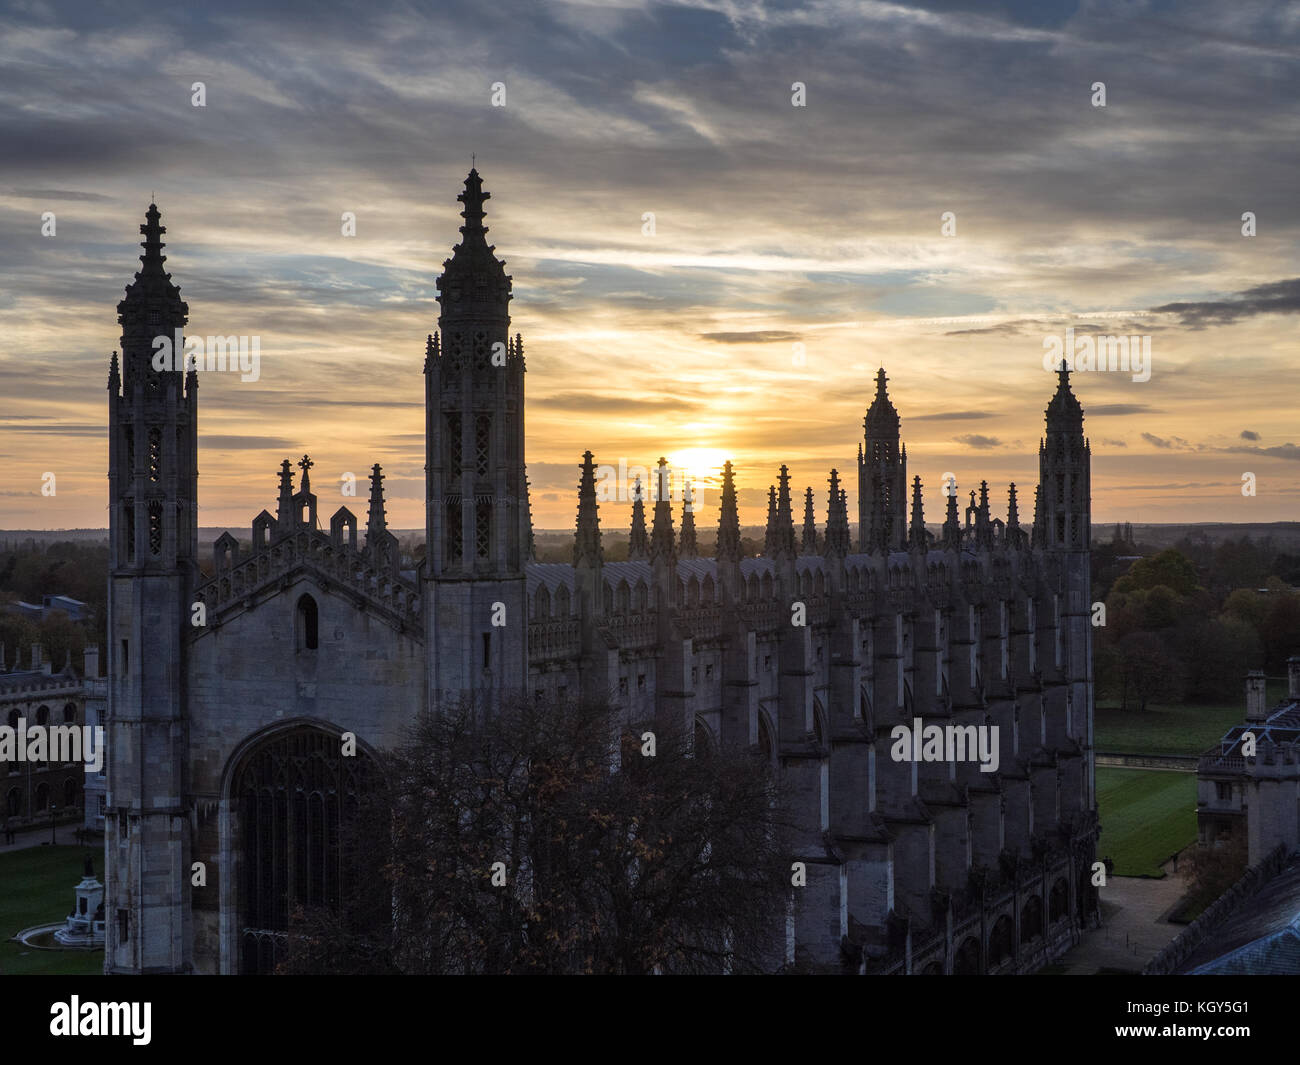 Chapelle du Kings College de Cambridge - les tours de la chapelle contre le soleil couchant Banque D'Images